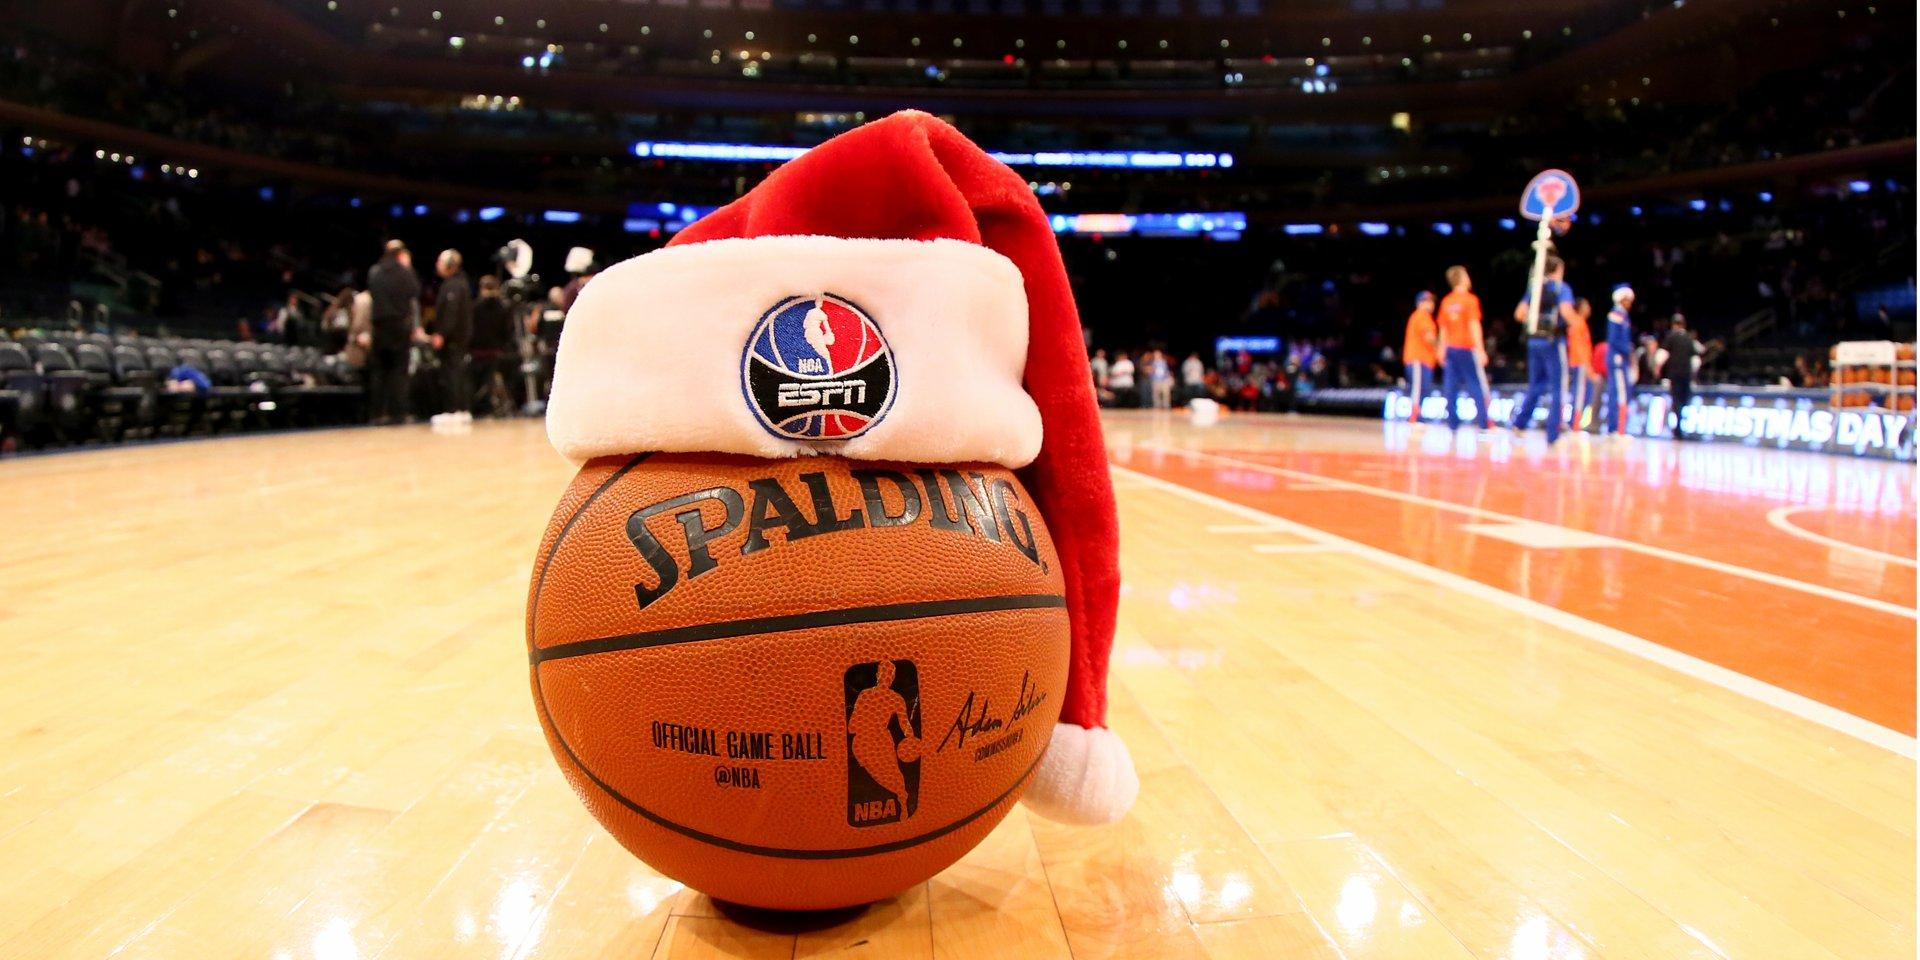 Un ballon Spalding affublé d'un bonnet à l'occasion des fêtes de Noël